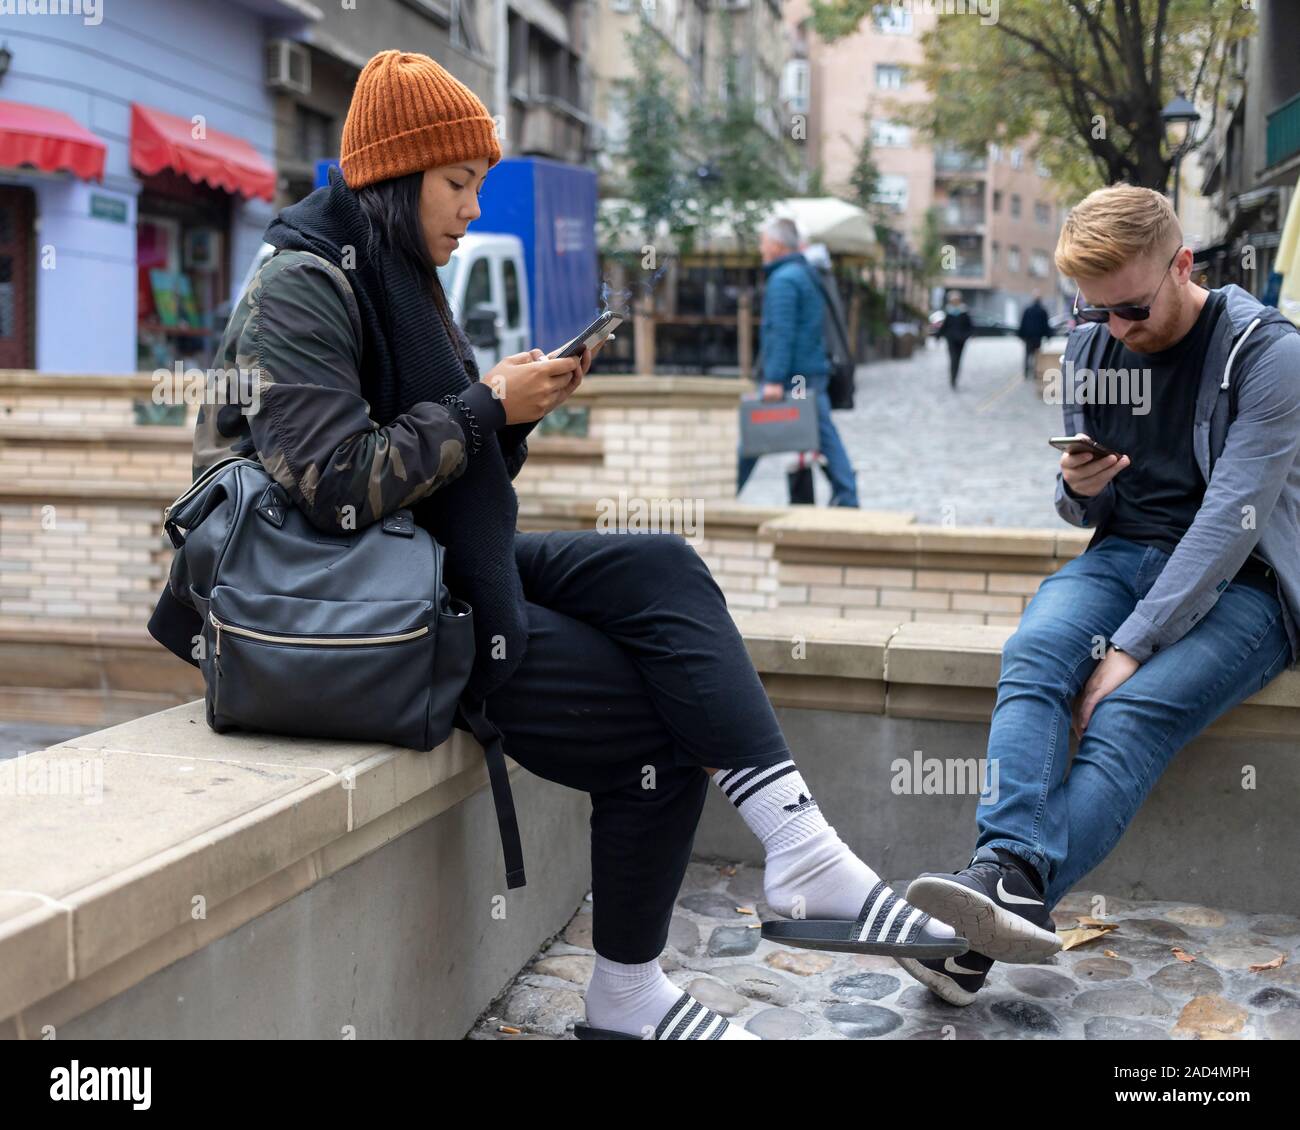 Belgrado, Serbia, Oct 7, 2019: una joven pareja sentada en la calle se centró en sus smartphones Foto de stock